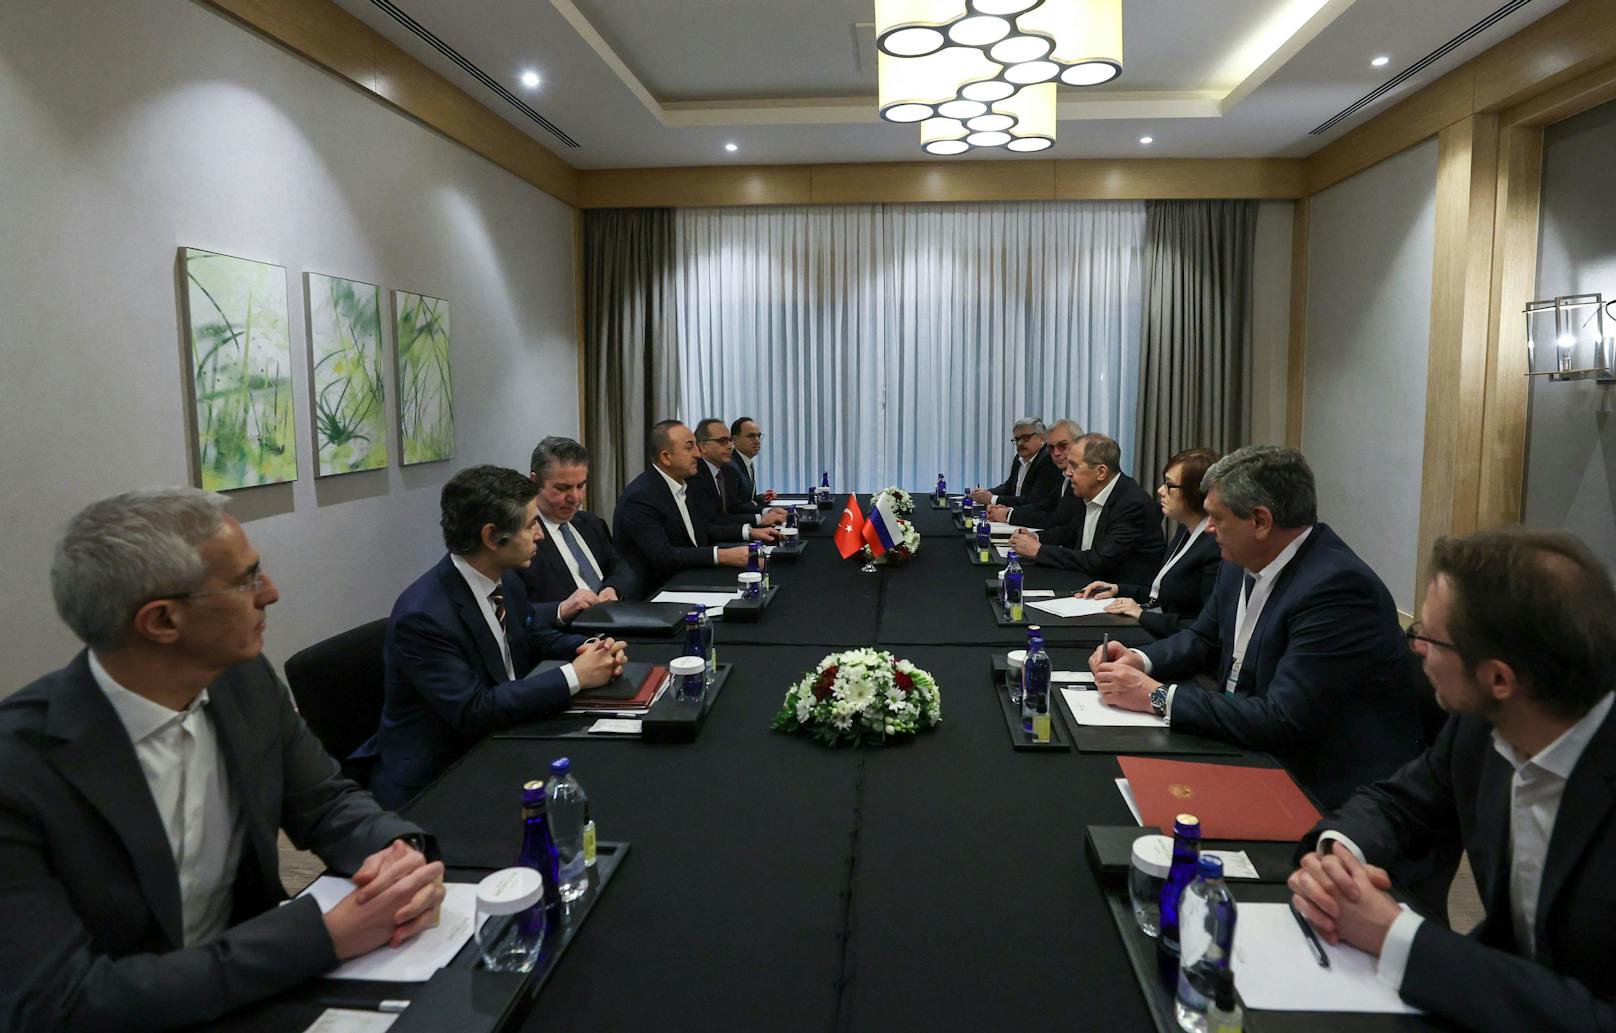 Erstmals seit Beginn des Krieges vor zwei Wochen haben sich Russlands Außenminister Sergej Lawrow und sein ukrainischer Kollege Dmytro Kuleba heute zu direkten Verhandlungen getroffen.